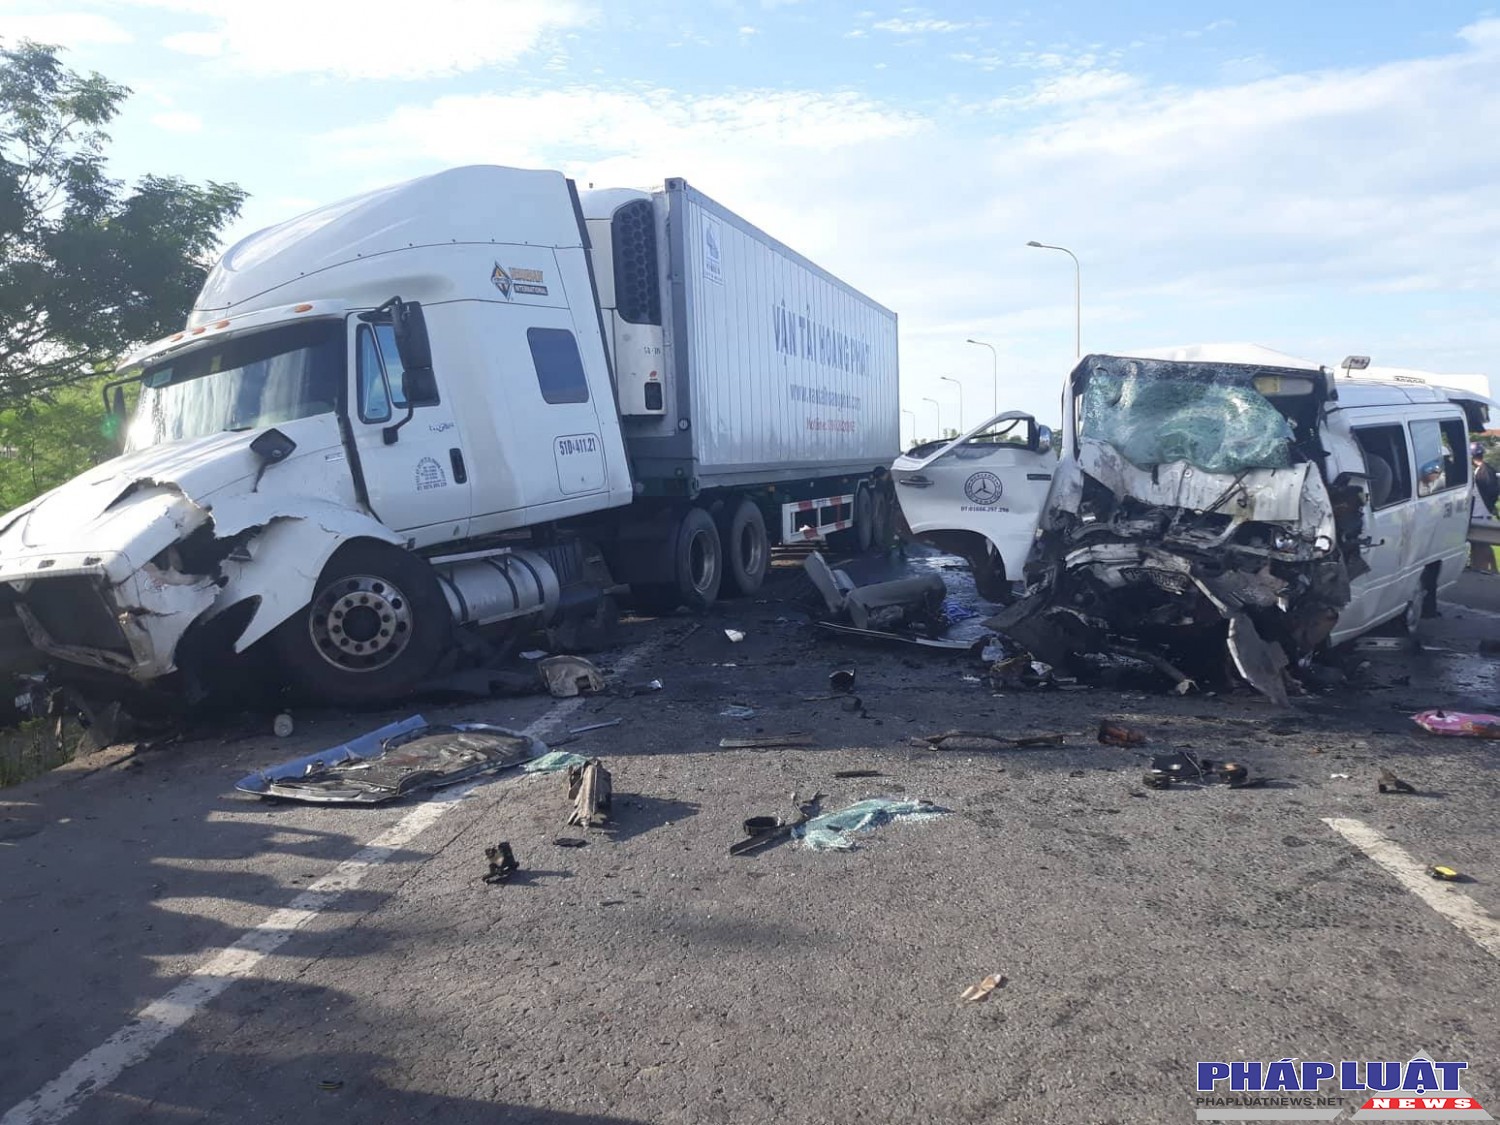 Tai nạn 13 người chết: Người nhà chú rể kể phút xe khách tông xe container